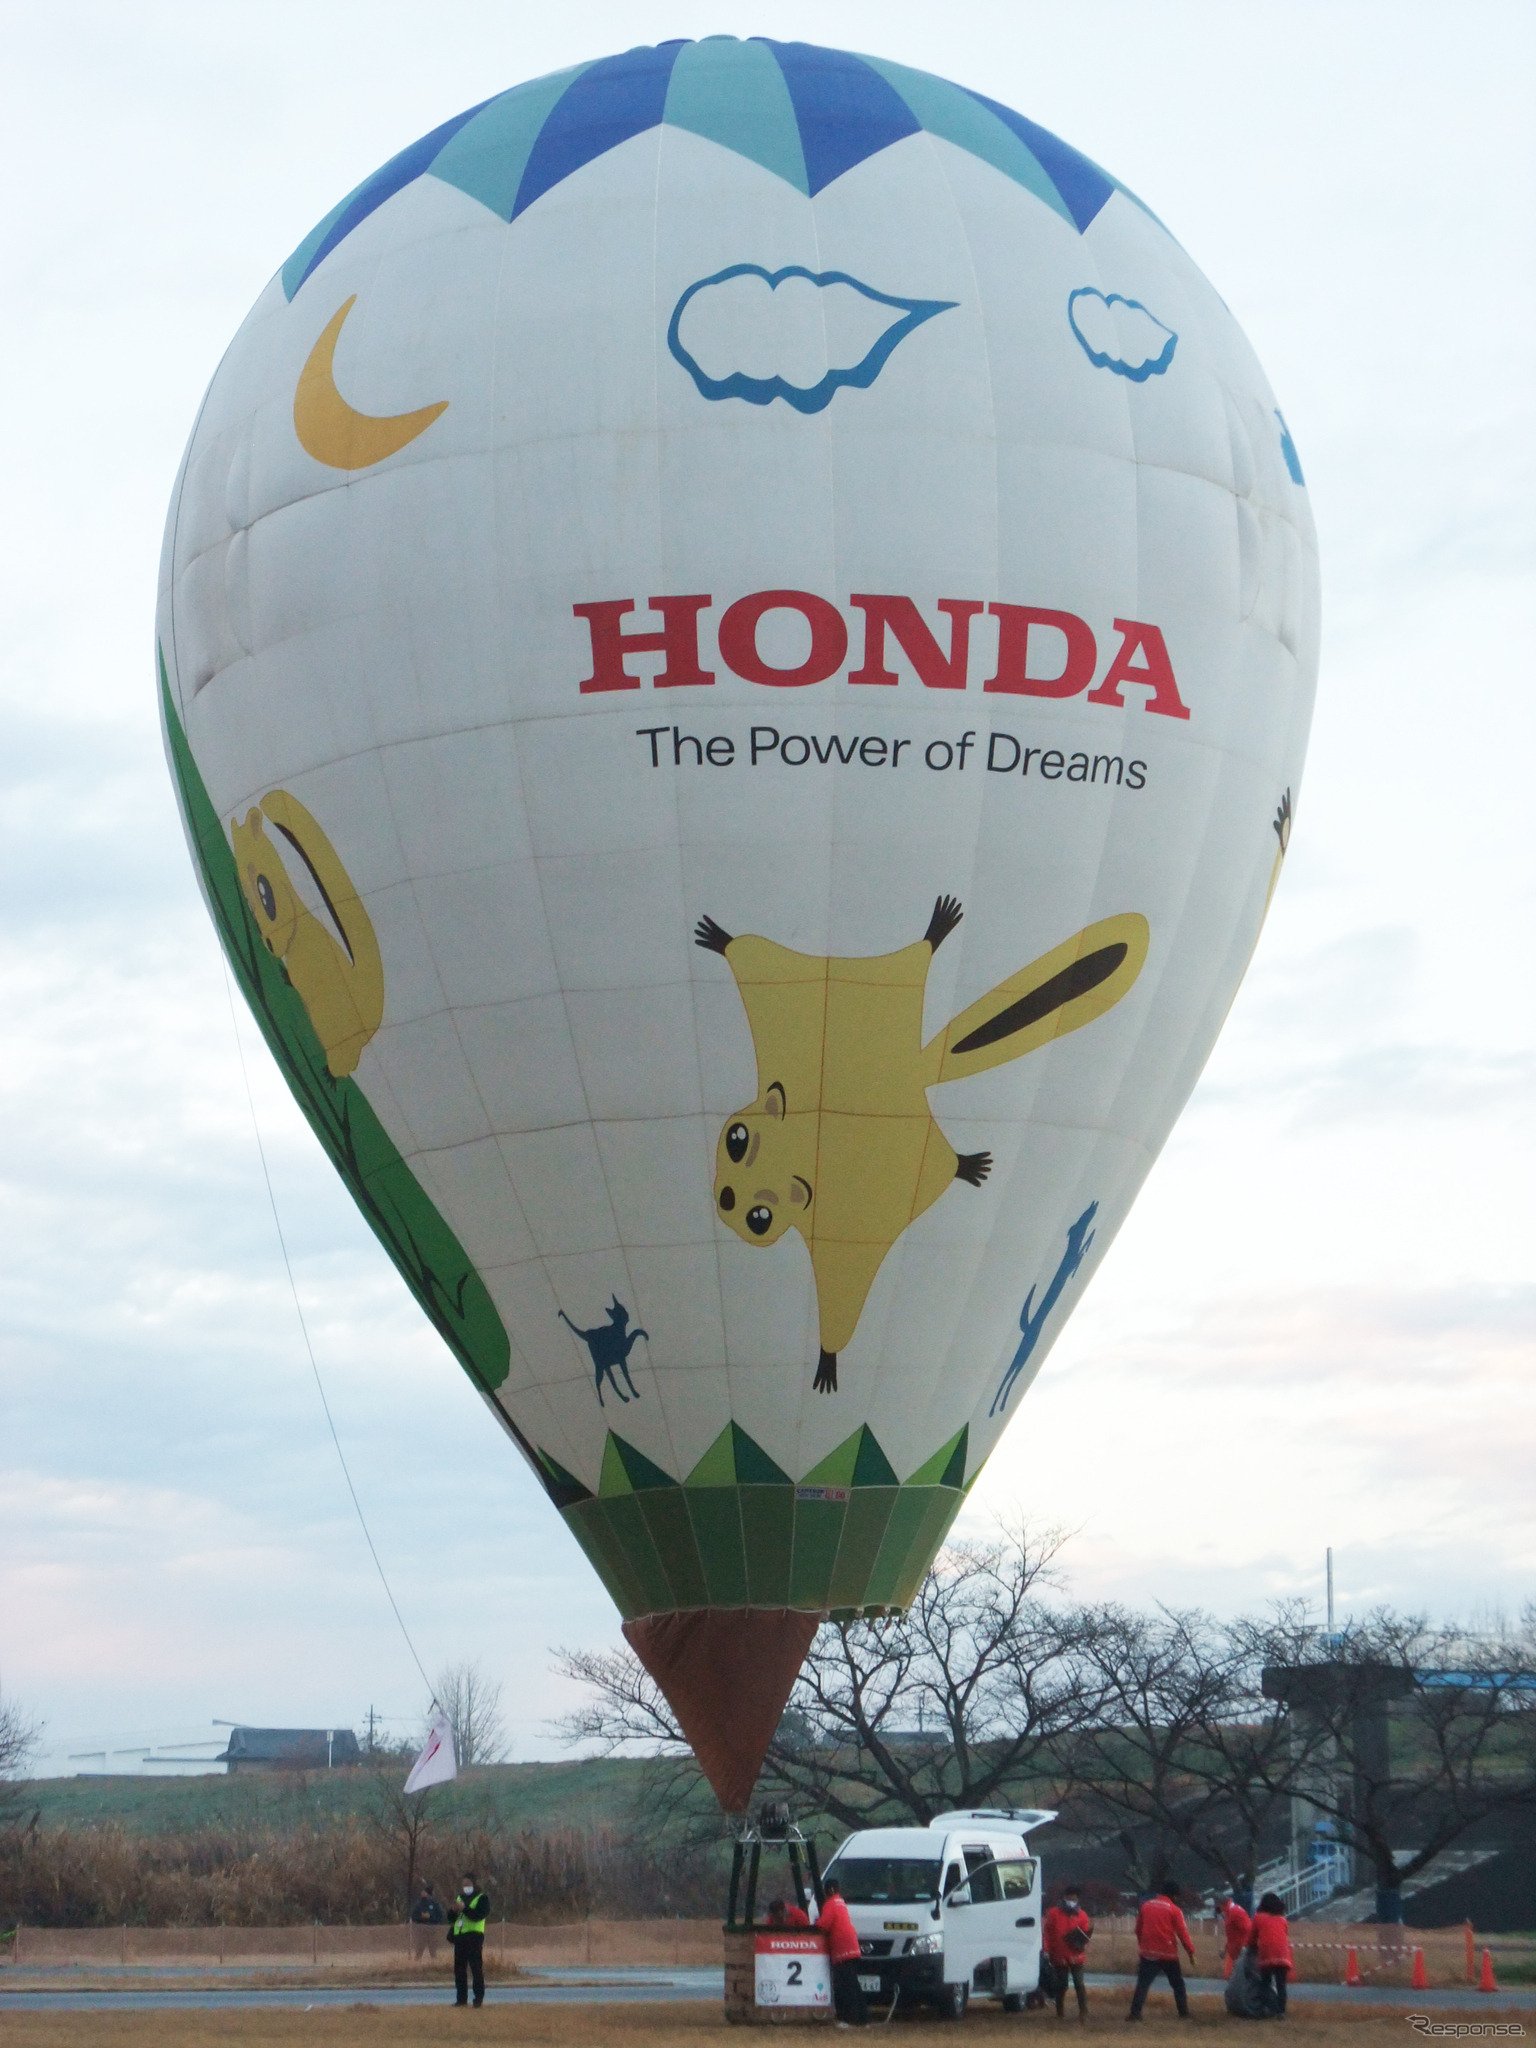 上田諭選手が操るホンダ熱気球レーシングチームの機体「モモン号」。モモンガの図柄が人気だ。